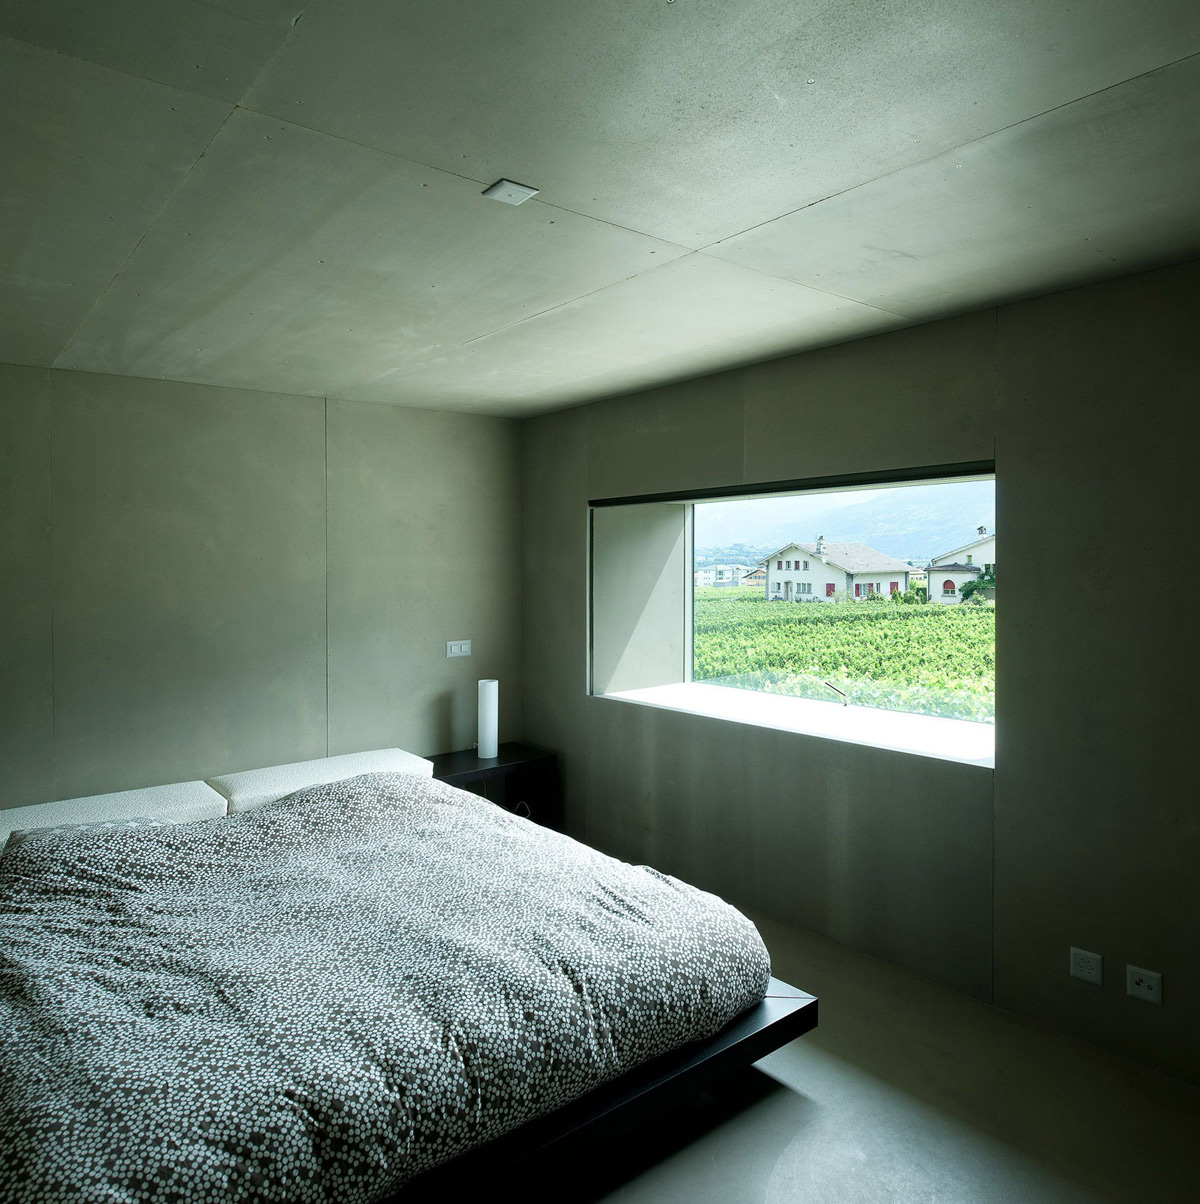 Bedroom, Home Remodel in Vétroz, Switzerland